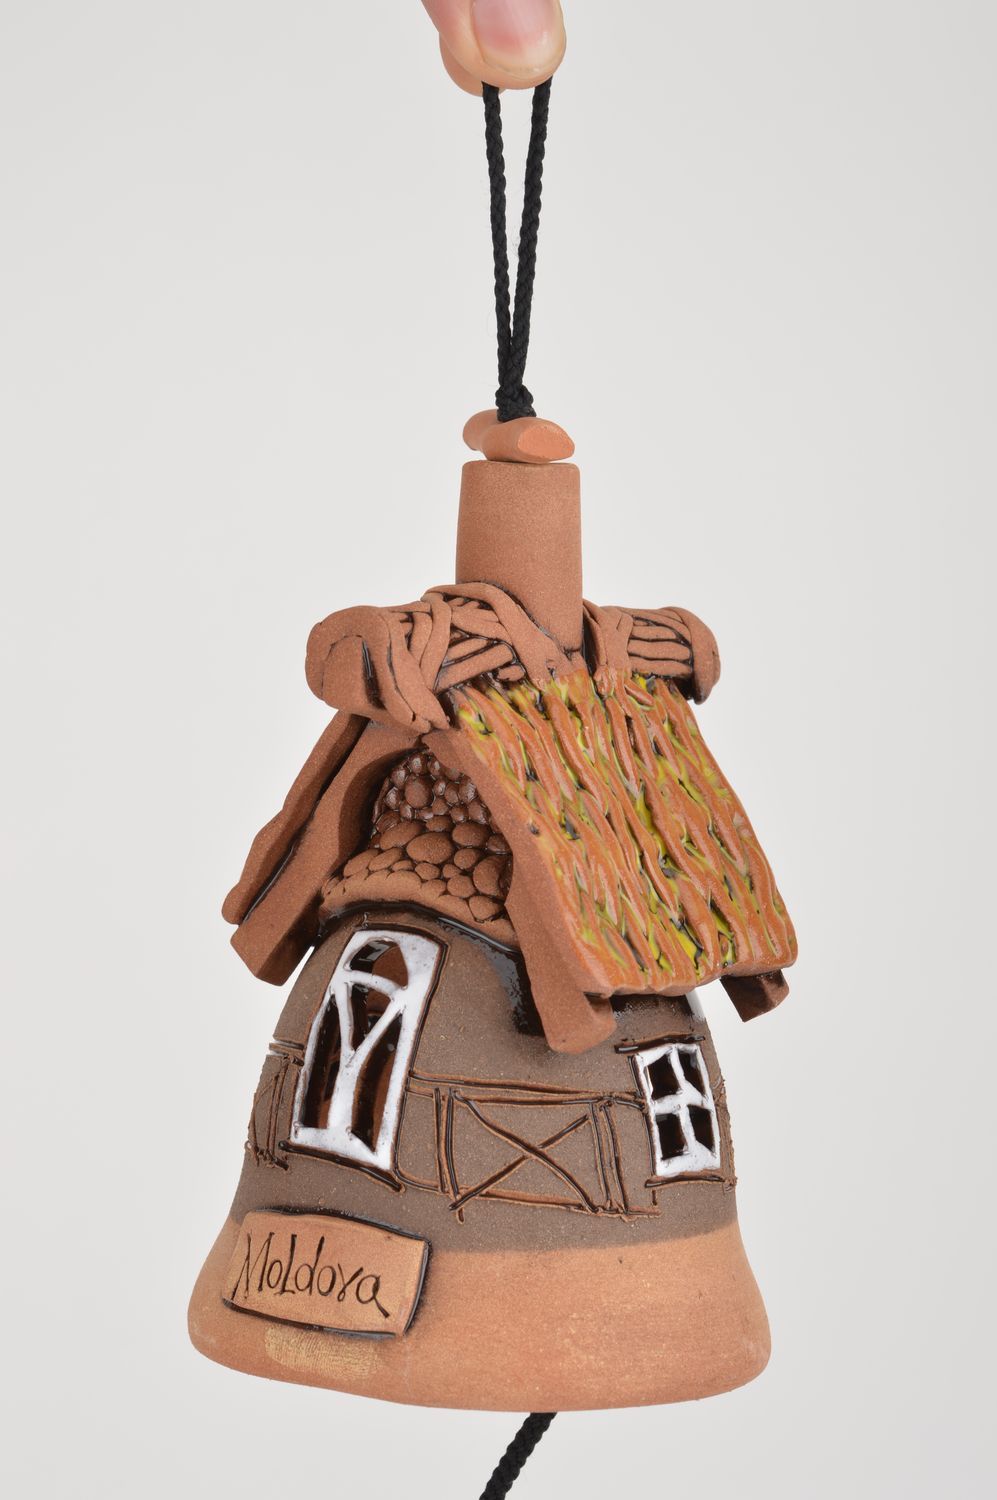 Большой глиняный колокольчик ручной работы в виде домика для декора интерьера фото 3